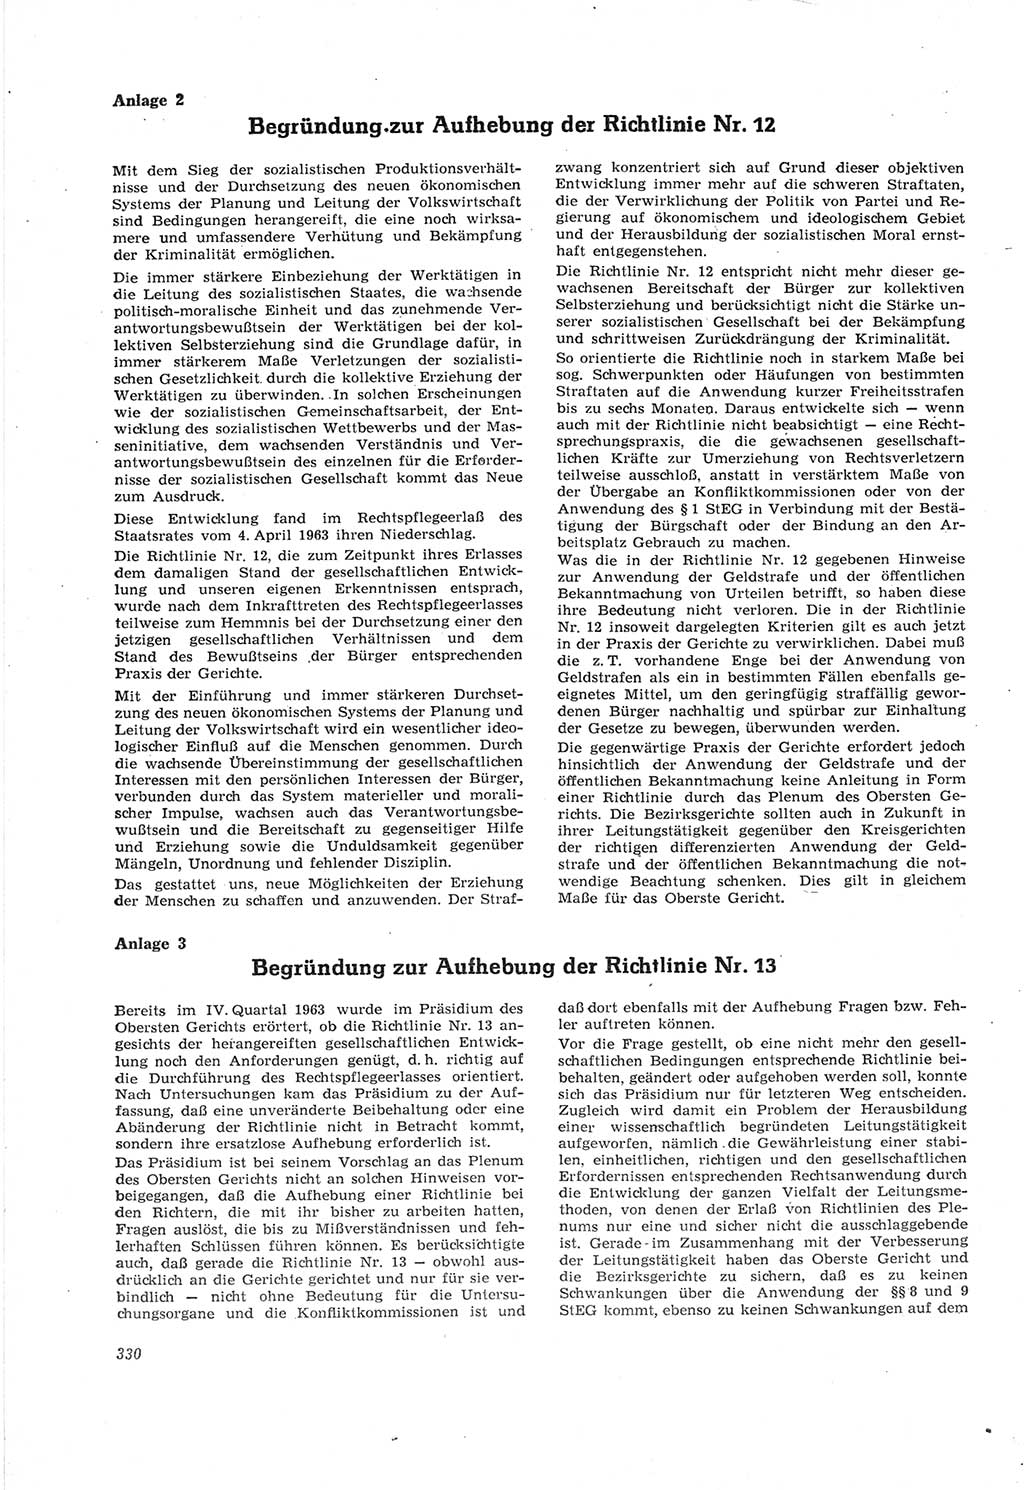 Neue Justiz (NJ), Zeitschrift für Recht und Rechtswissenschaft [Deutsche Demokratische Republik (DDR)], 18. Jahrgang 1964, Seite 330 (NJ DDR 1964, S. 330)